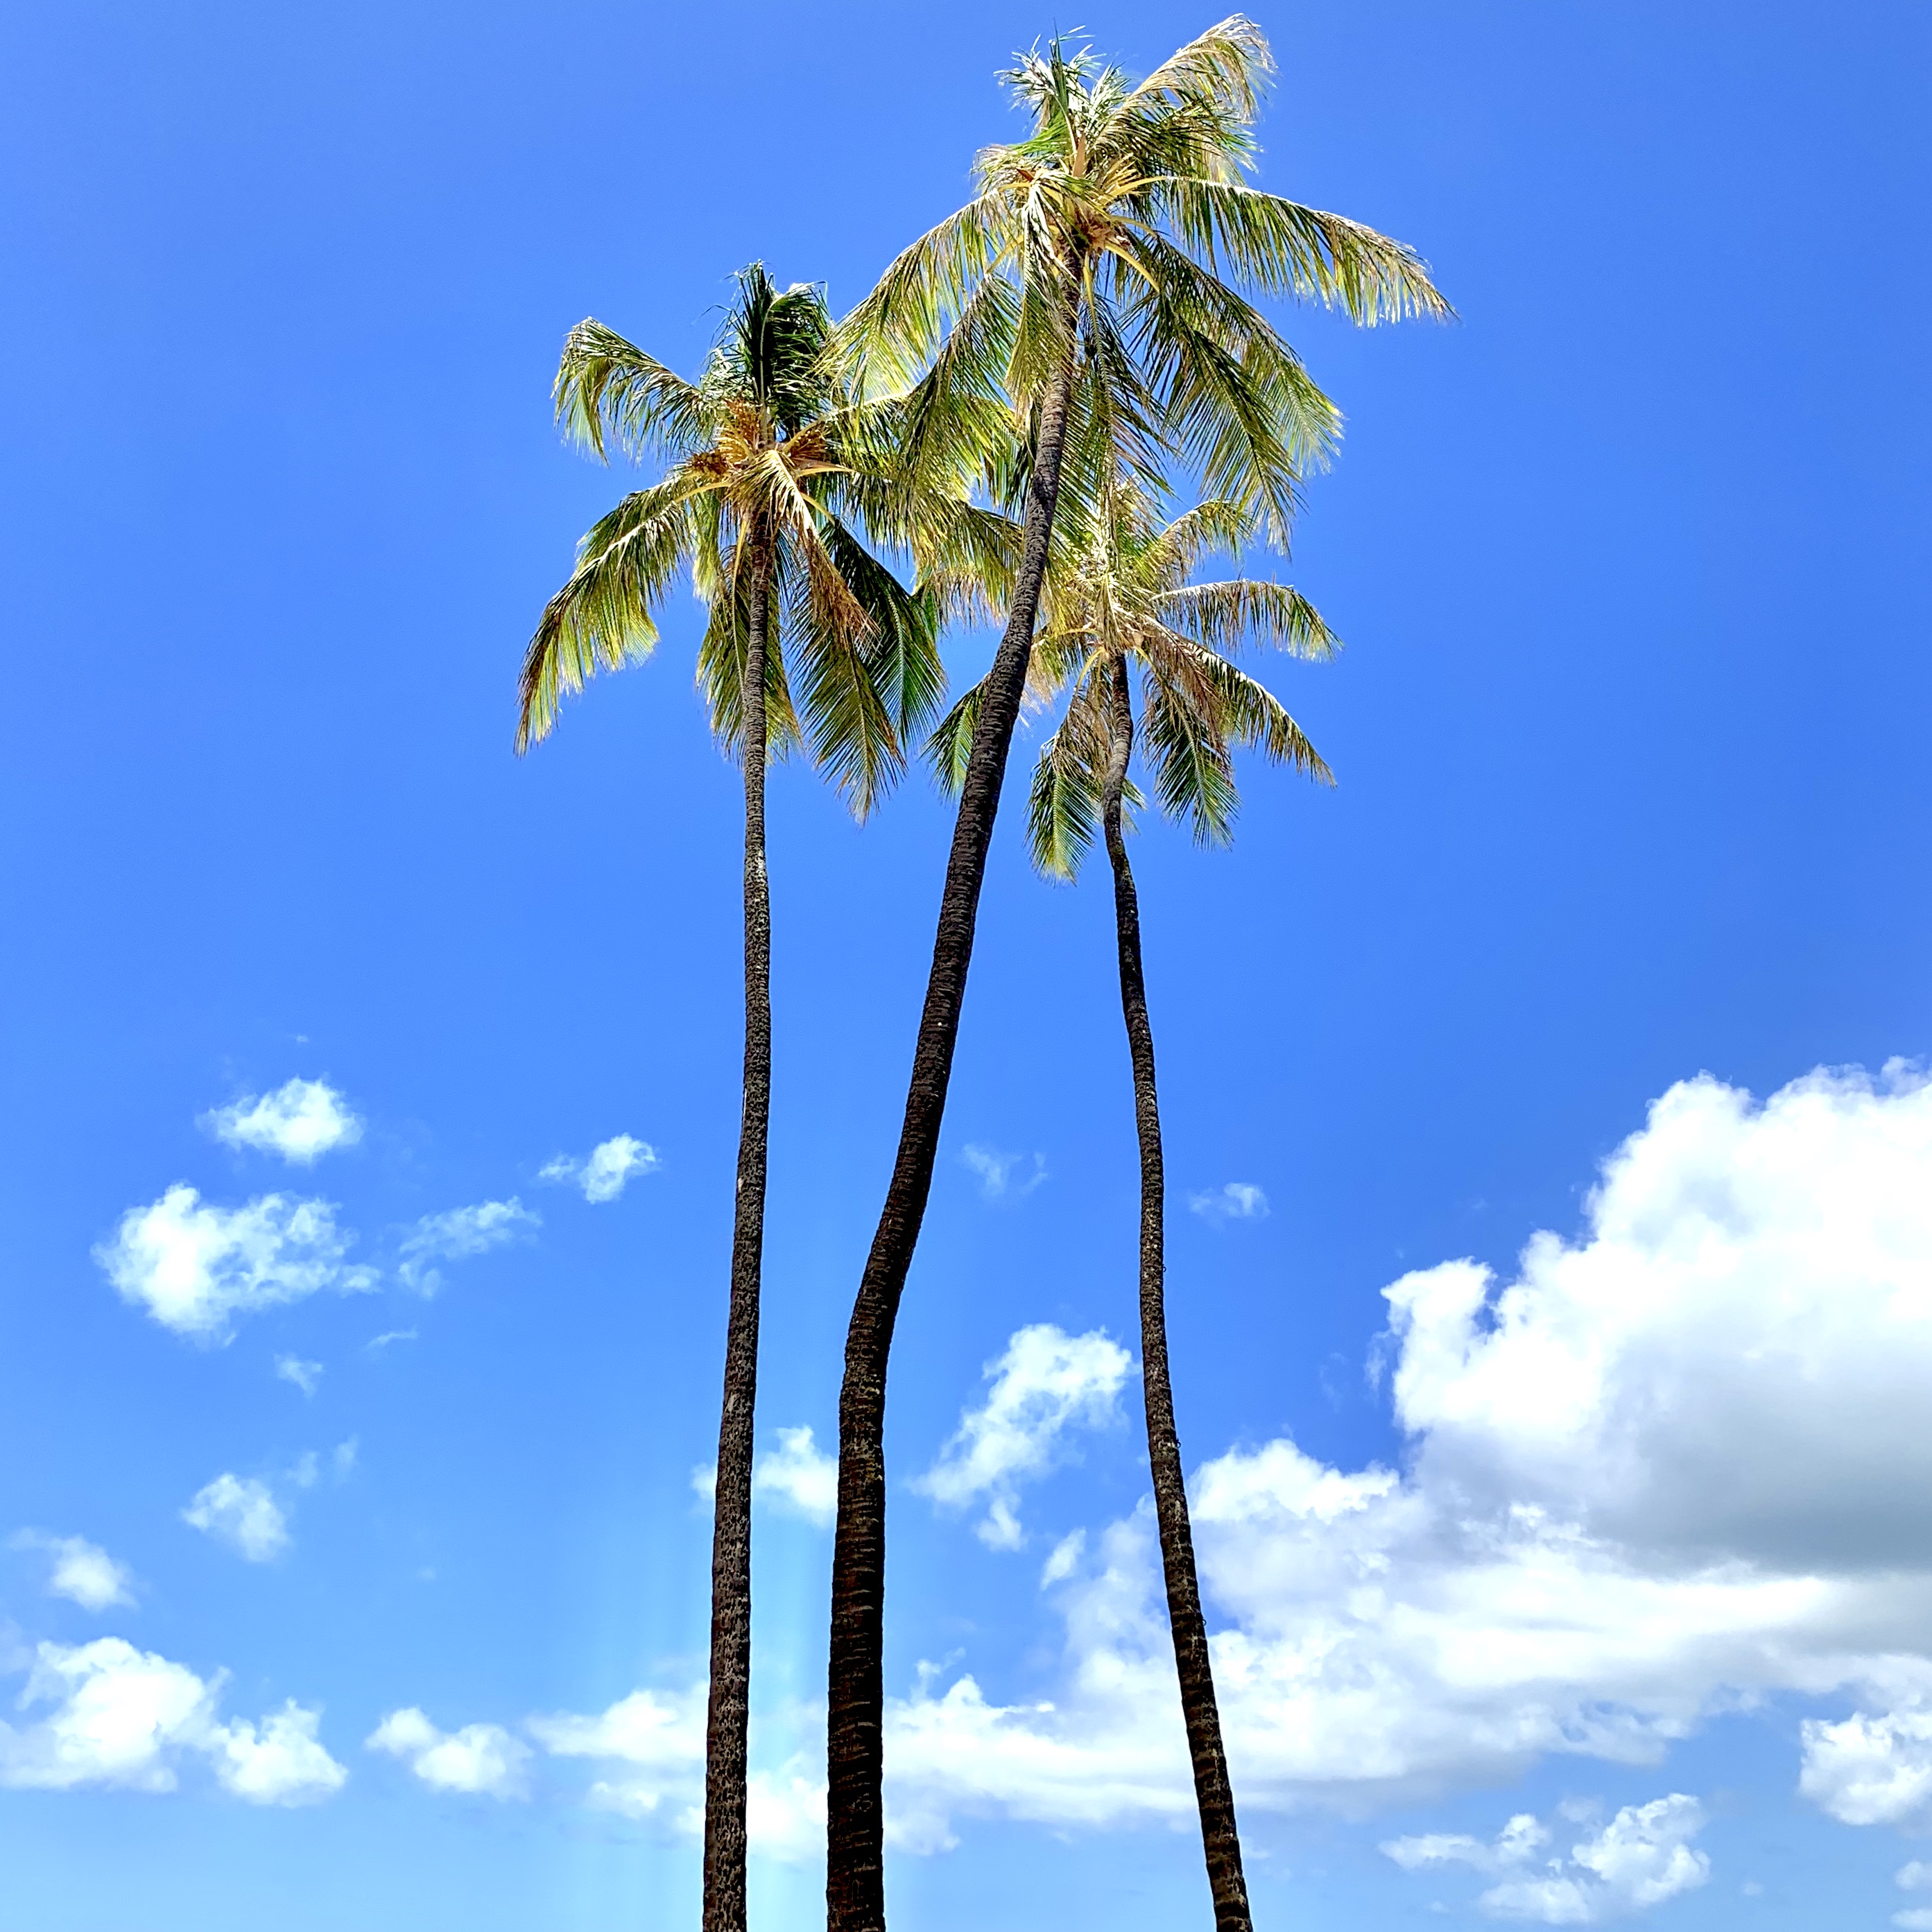 ハワイフォトツアー ヤシの木いろいろ Blog ハワイ挙式 ハワイフォトウェディングのチアーズウェディング